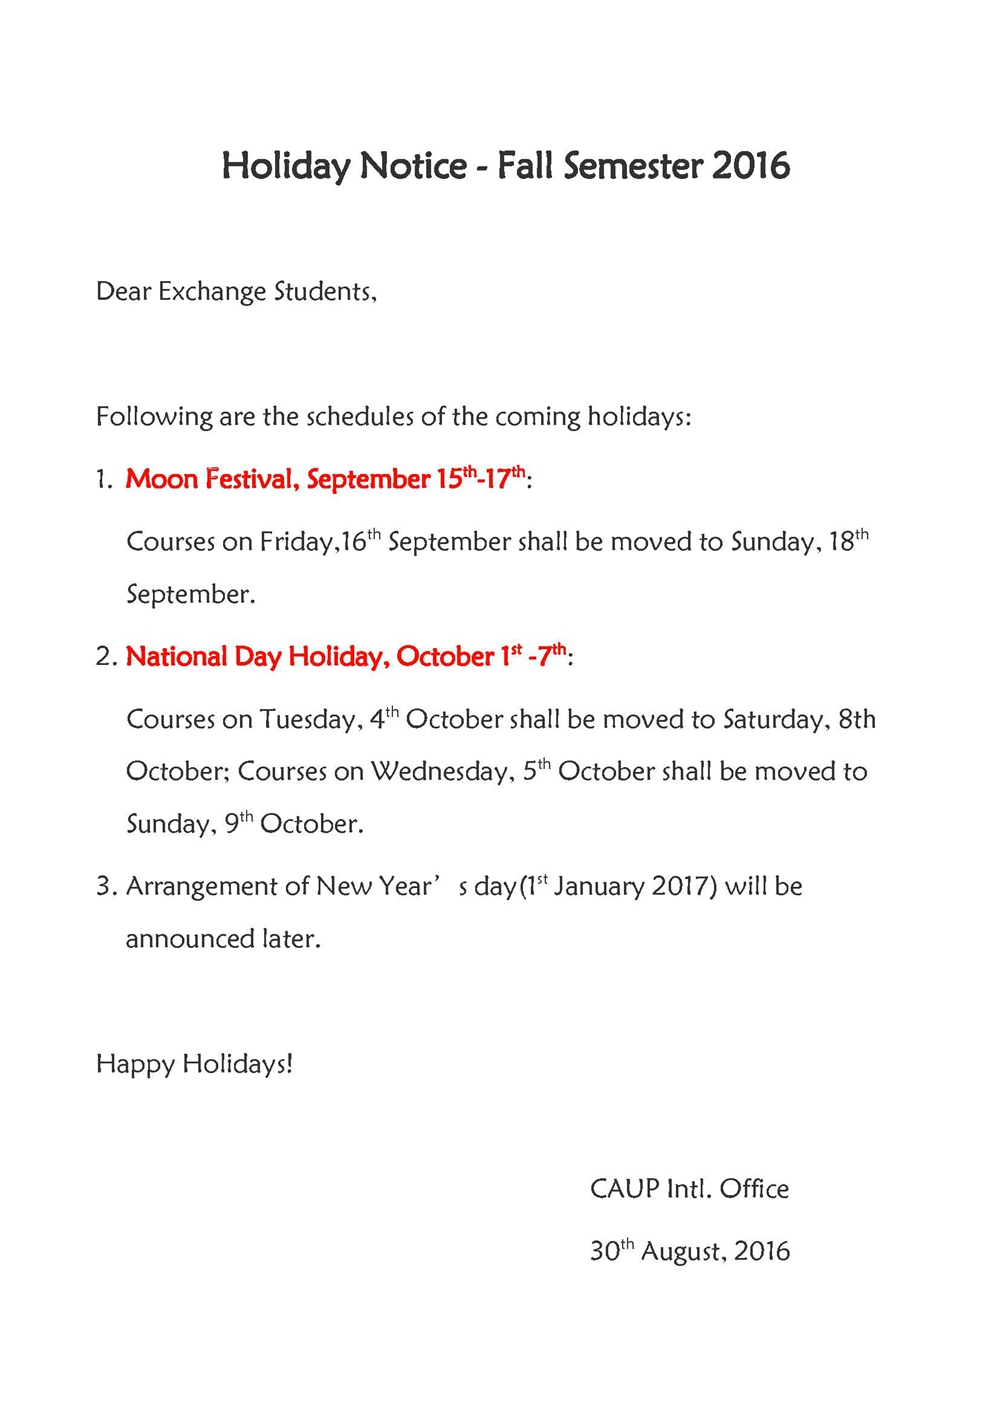 Holiday Notice - Fall Semester 2016_副本.jpg